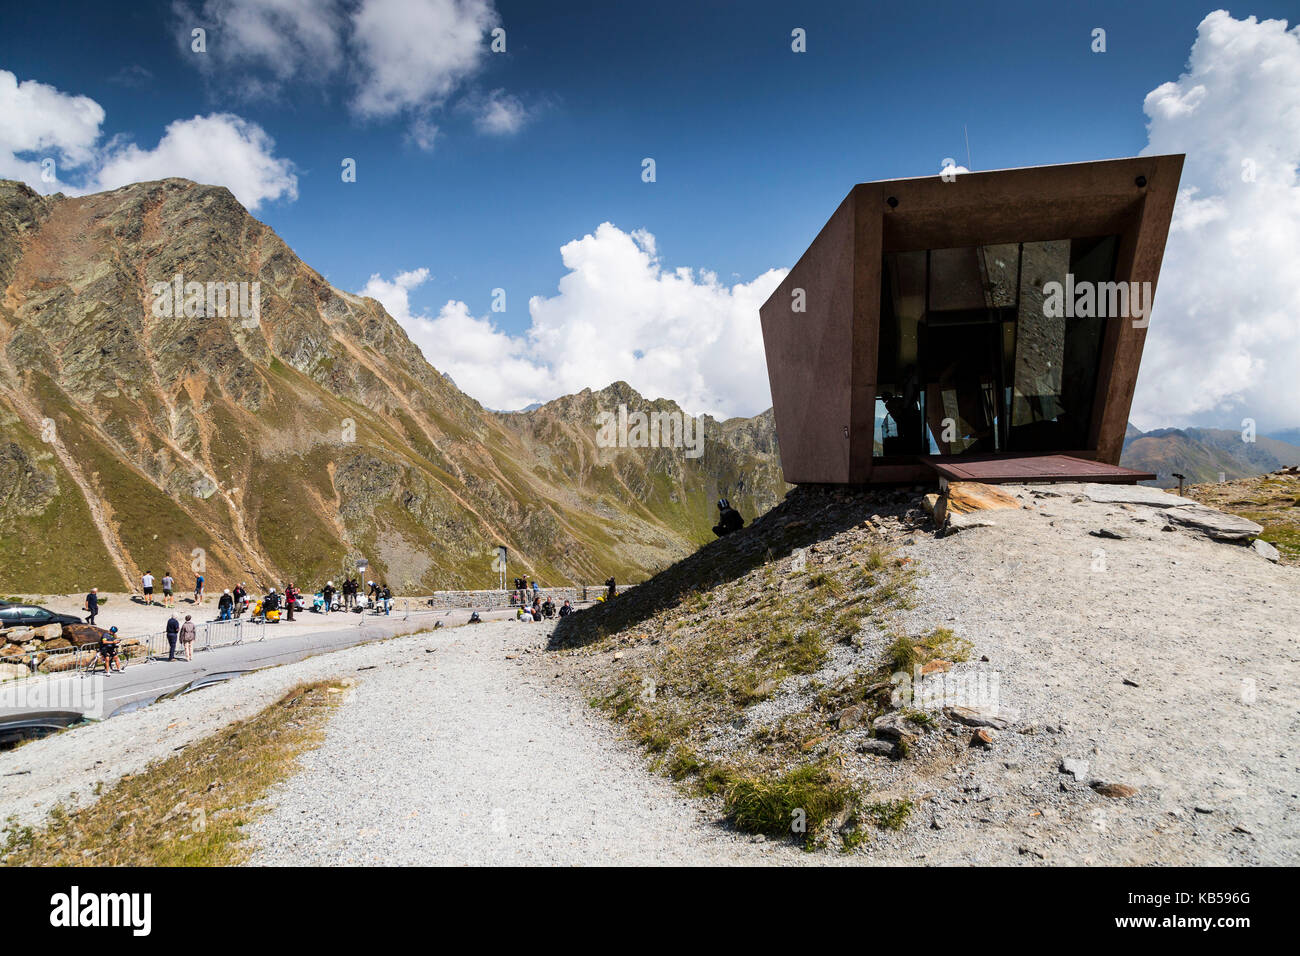 Europe, Autriche/Italie, Alpes, montagnes - Passo Rombo - Timmelsjoch - Musée Banque D'Images